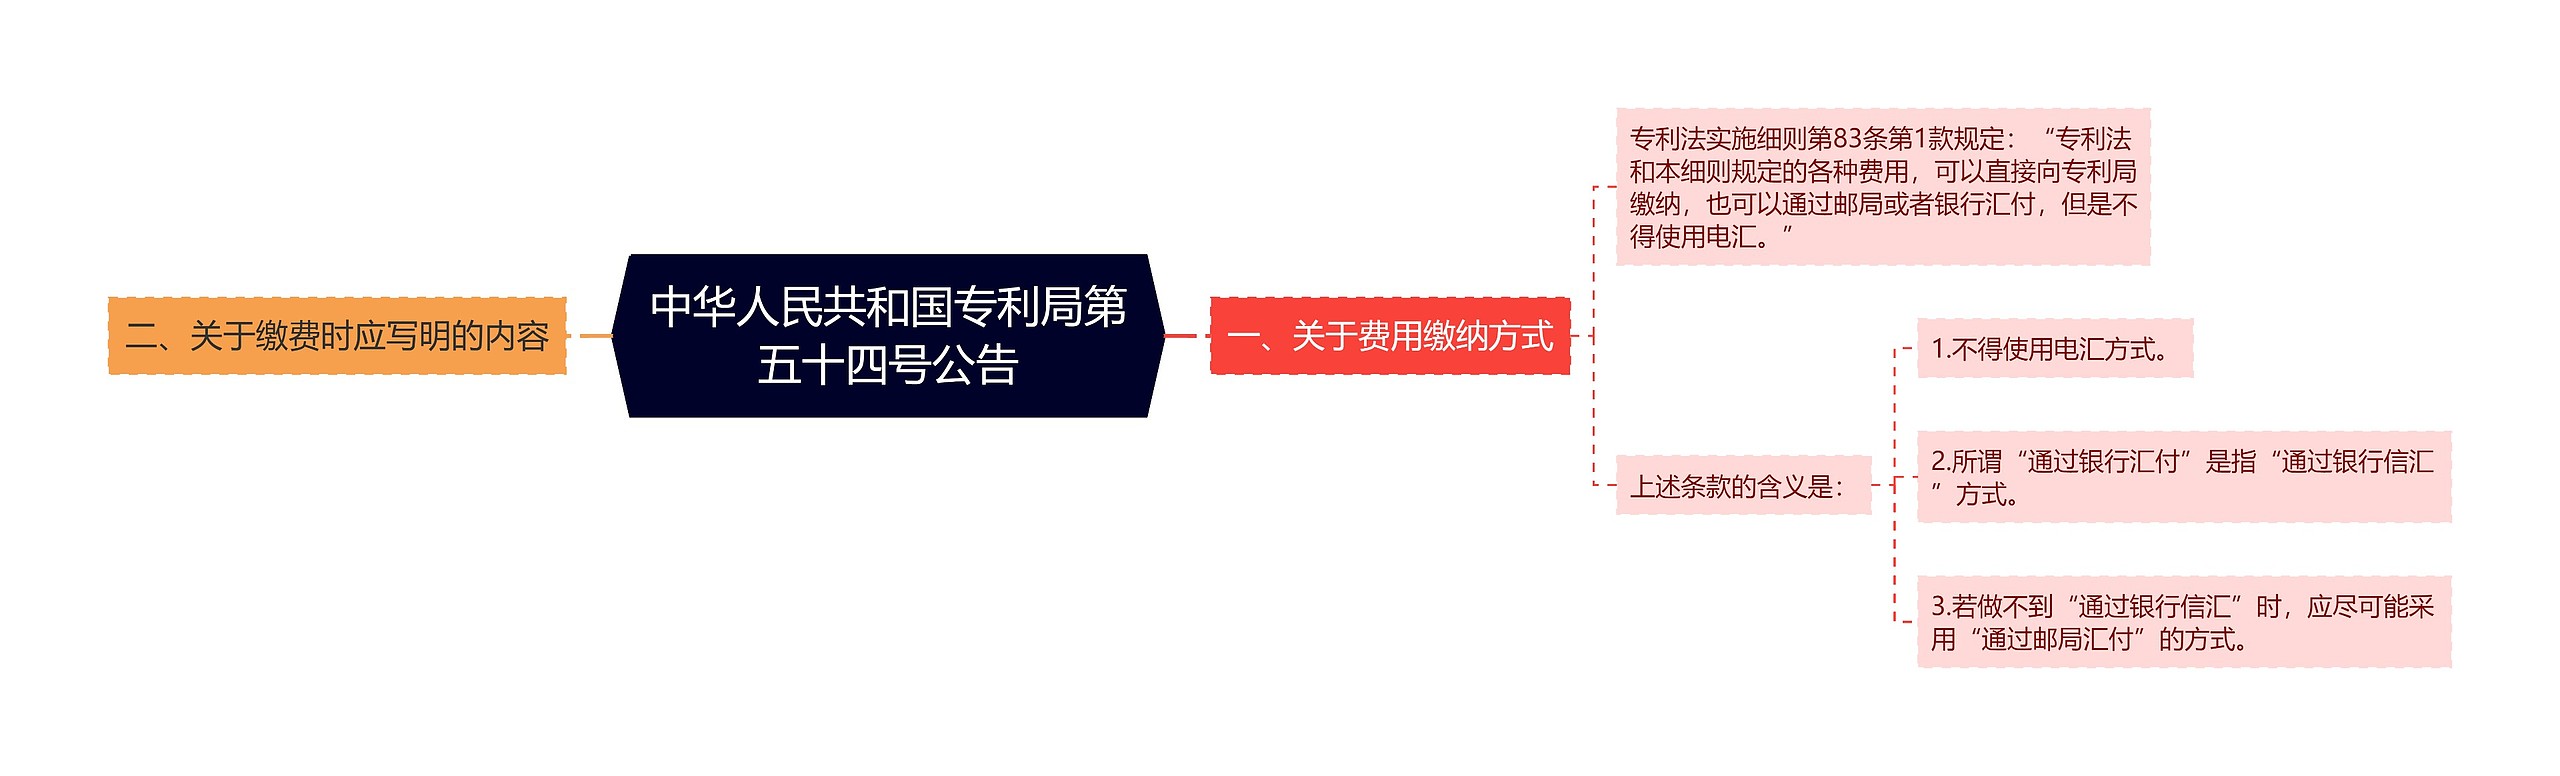 中华人民共和国专利局第五十四号公告思维导图